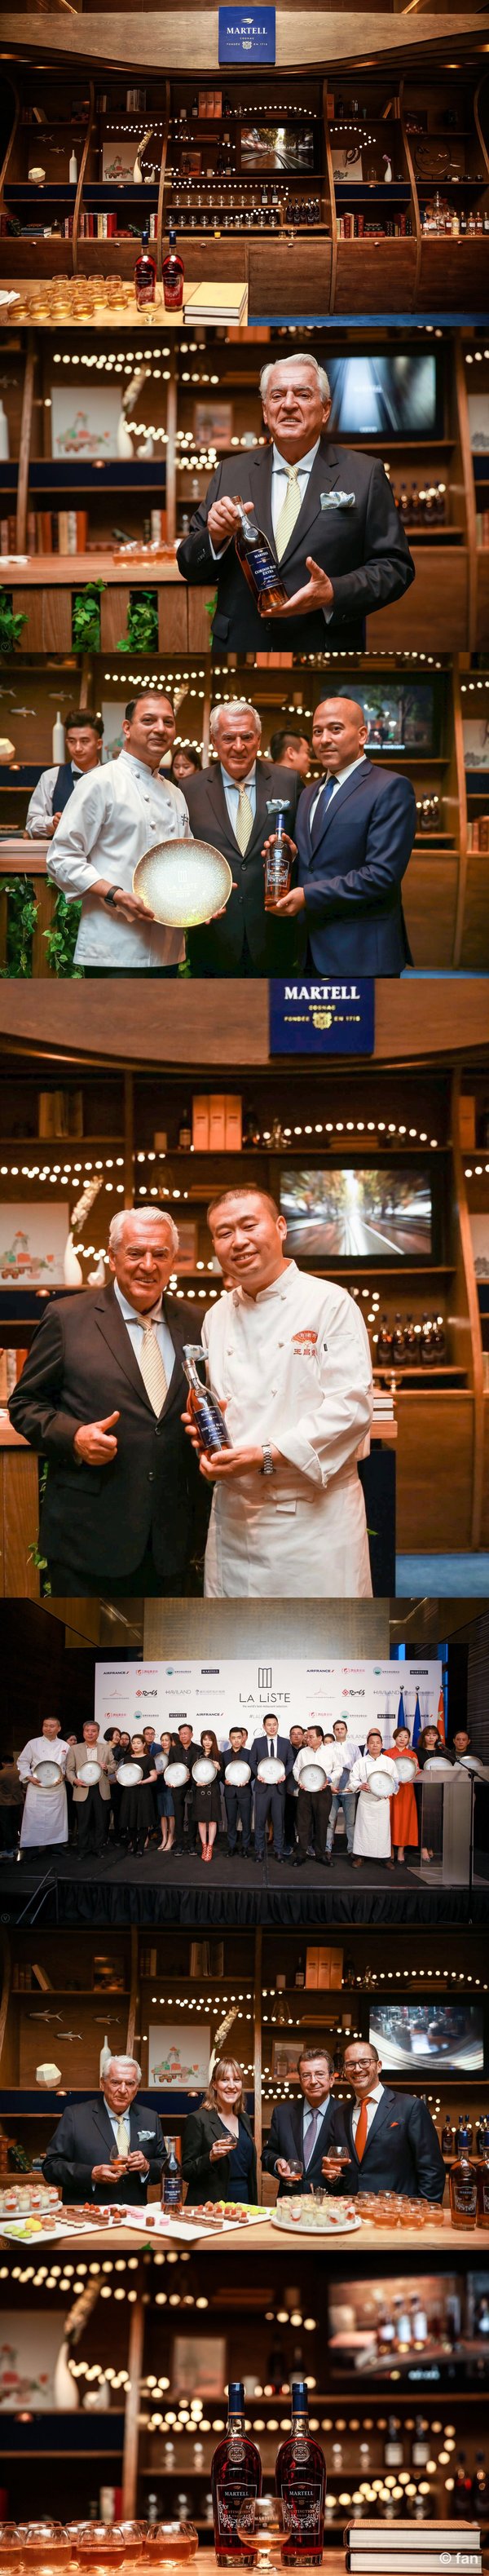 马爹利与巴黎之花共襄盛举见证世界顶级千家美食餐厅LA LISTE榜单北京发布现场图片